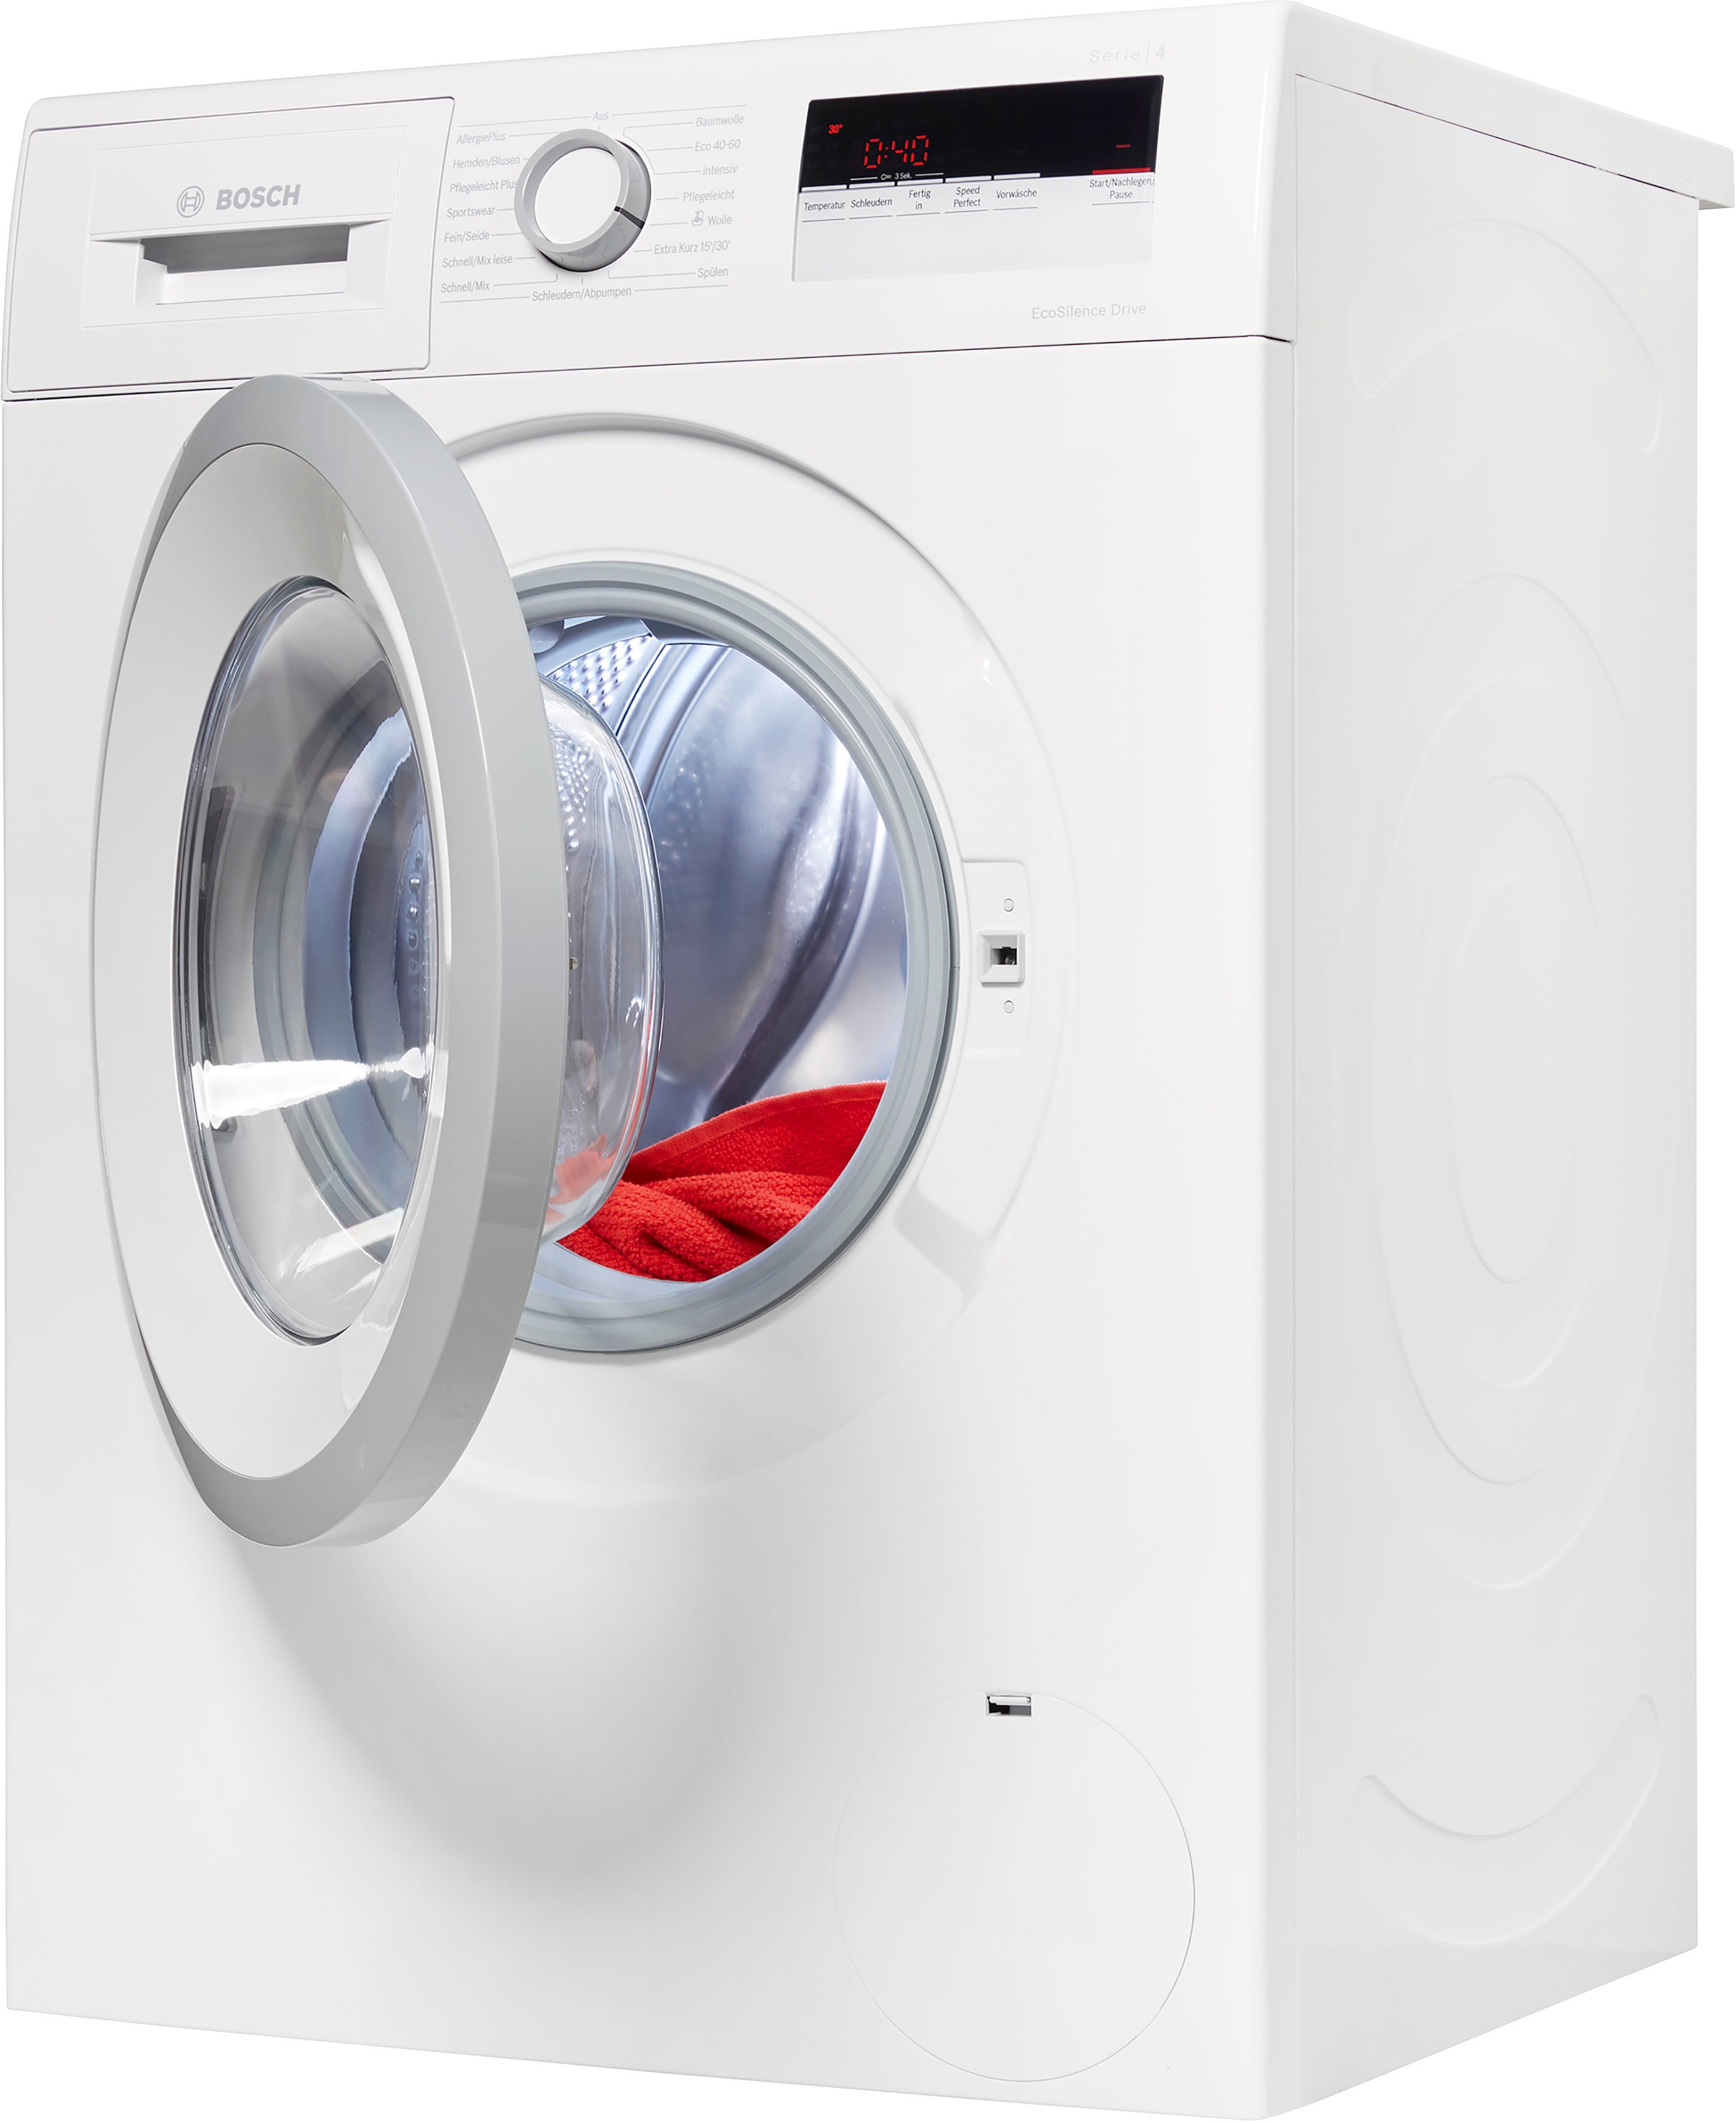 BOSCH Waschmaschine, U/min online 8 WAN28128, 1400 kaufen kg